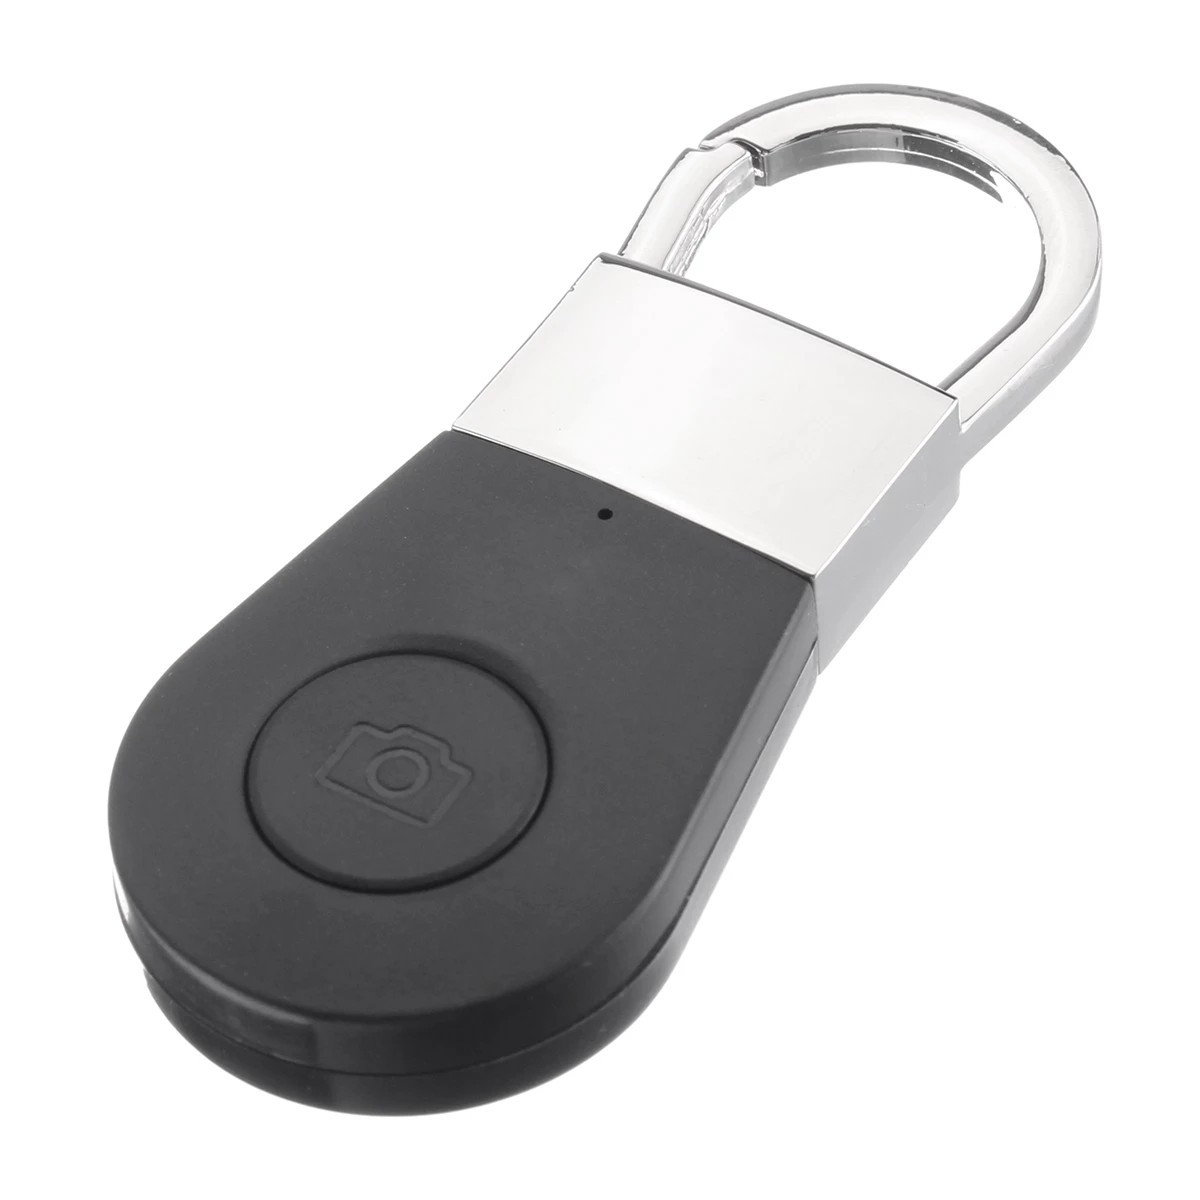 Vyhledávač klíčů - bluetooth hledač pro klíče, mobil, atd.